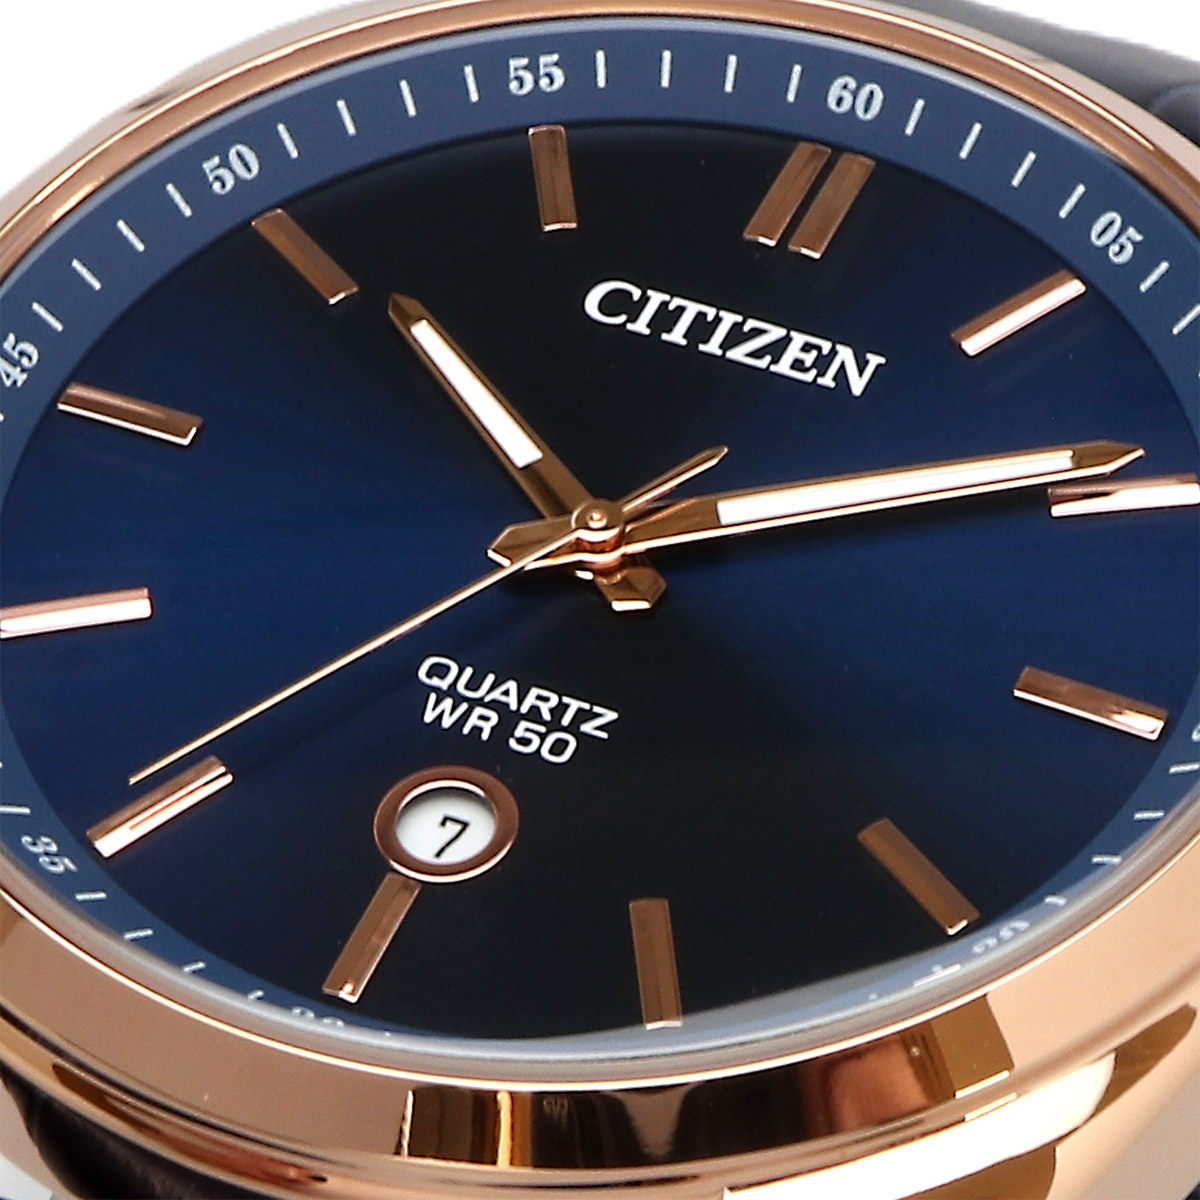 CITIZEN シチズン 腕時計 メンズ 海外モデル クォーツ ビジネス 